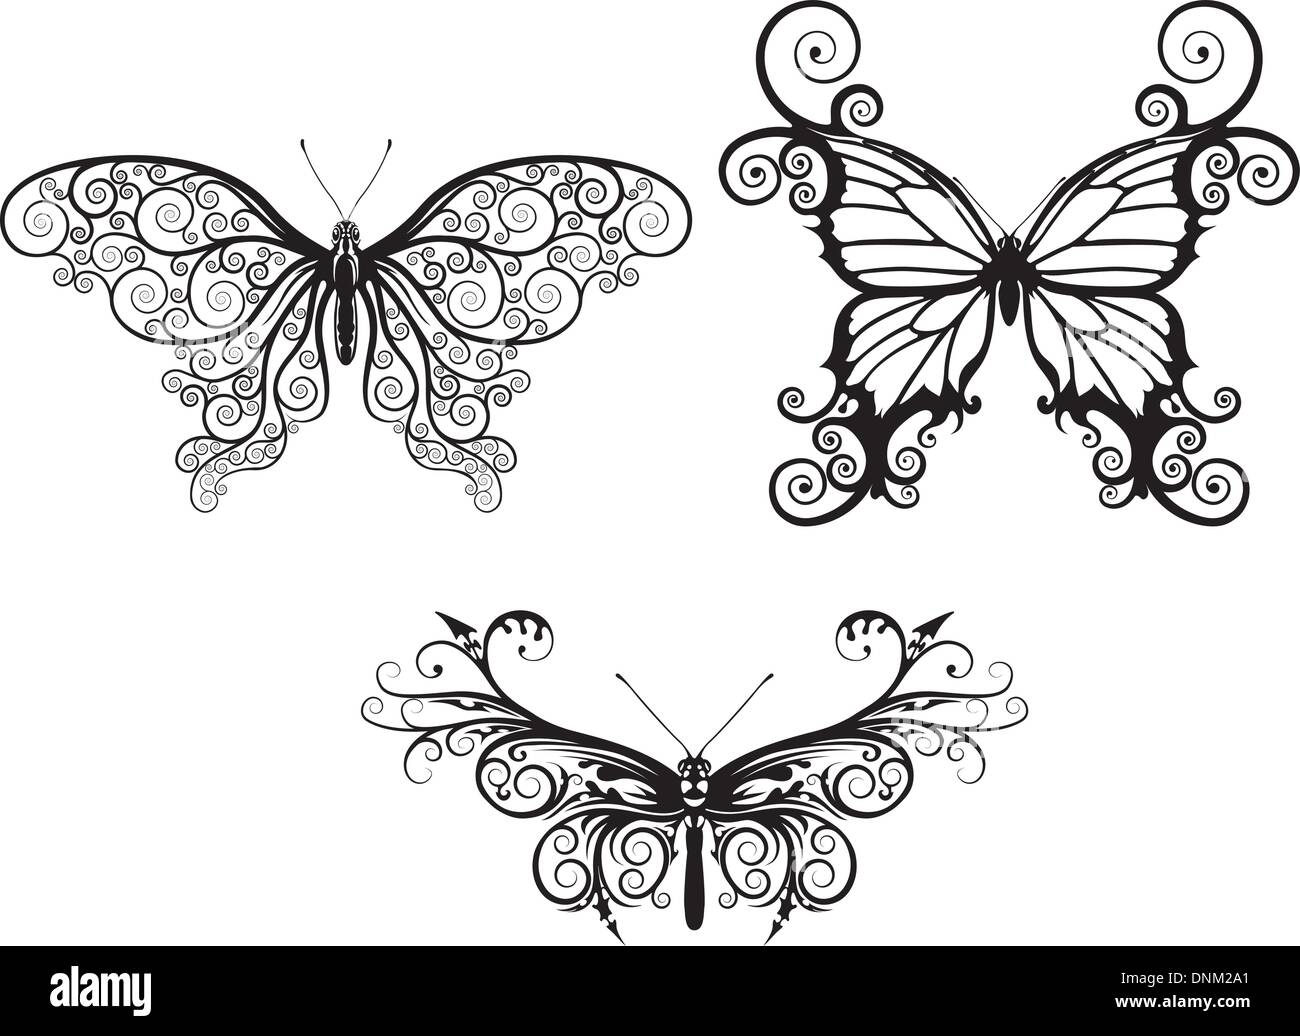 Illustrazioni di astratta stilizzata farfalle con modelli e volute che compongono le ali Illustrazione Vettoriale